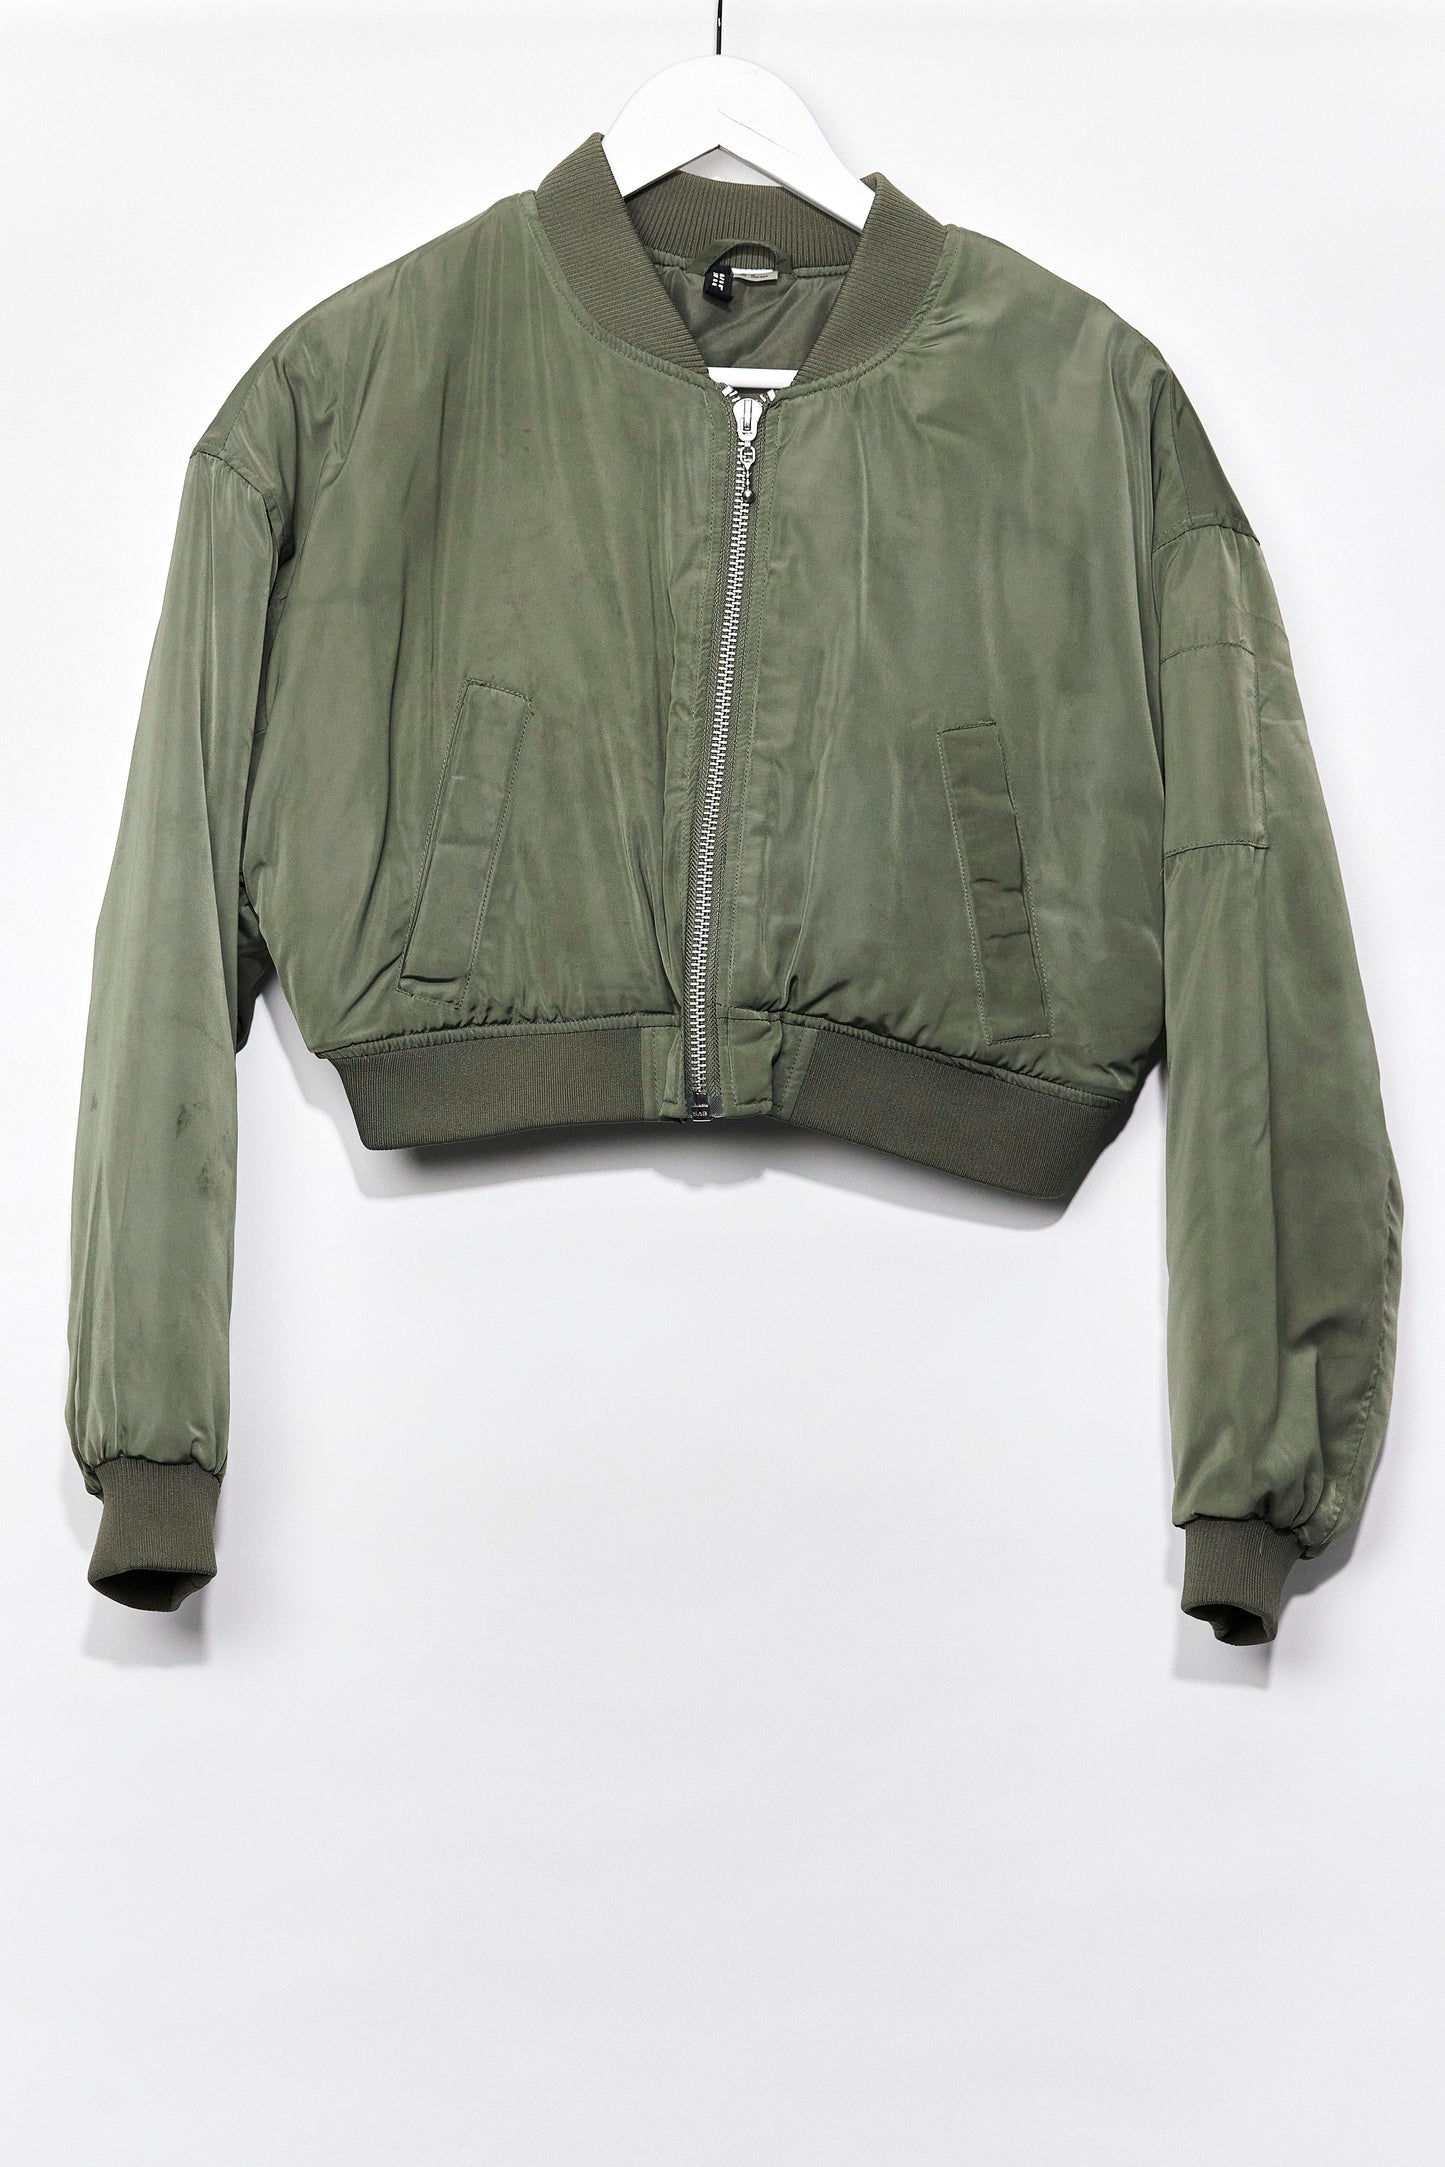 Womens H&M khaki cropped bomber jacket size medium